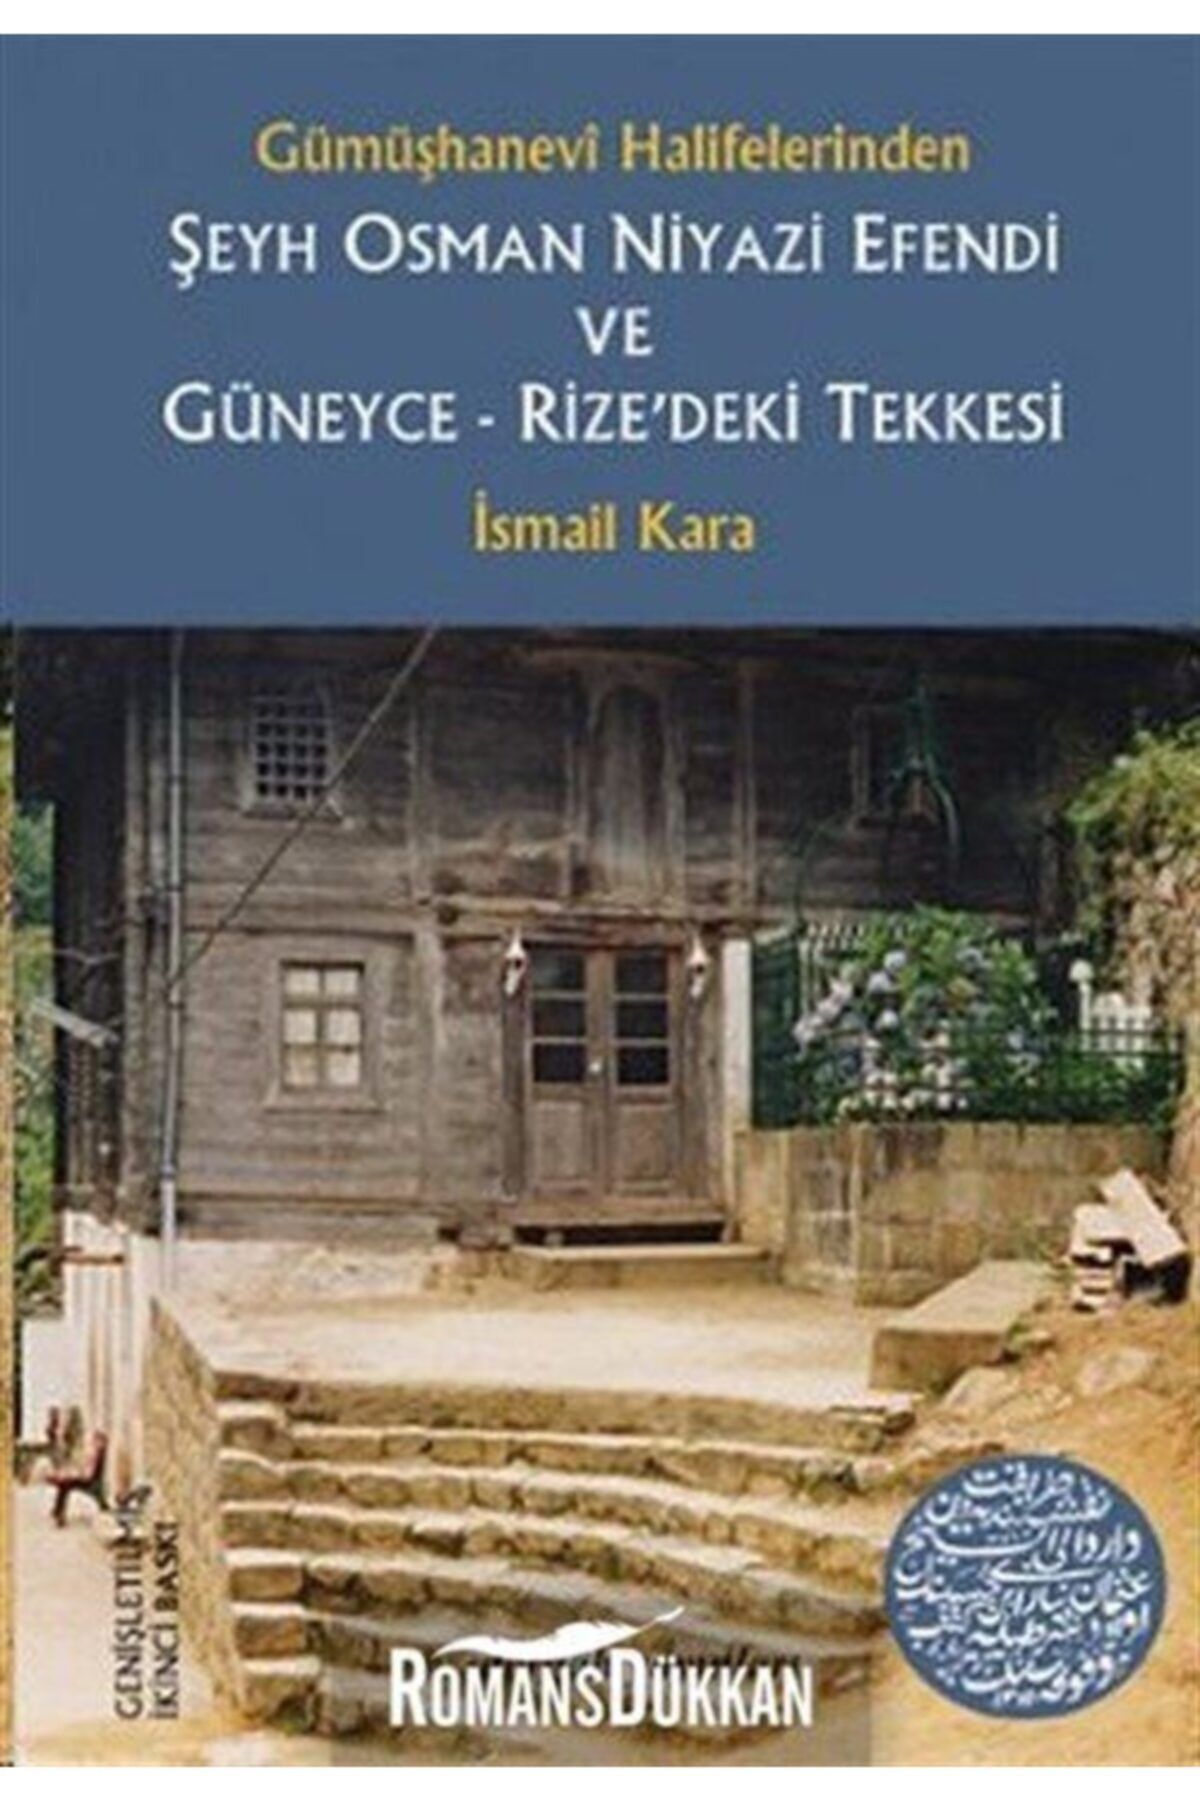 Dergah Yayınları Gümüşhanevi Halifelerinden Şeyh Osman Niyazi Efendi Ve Güneyce - Rize'deki Tekkesi